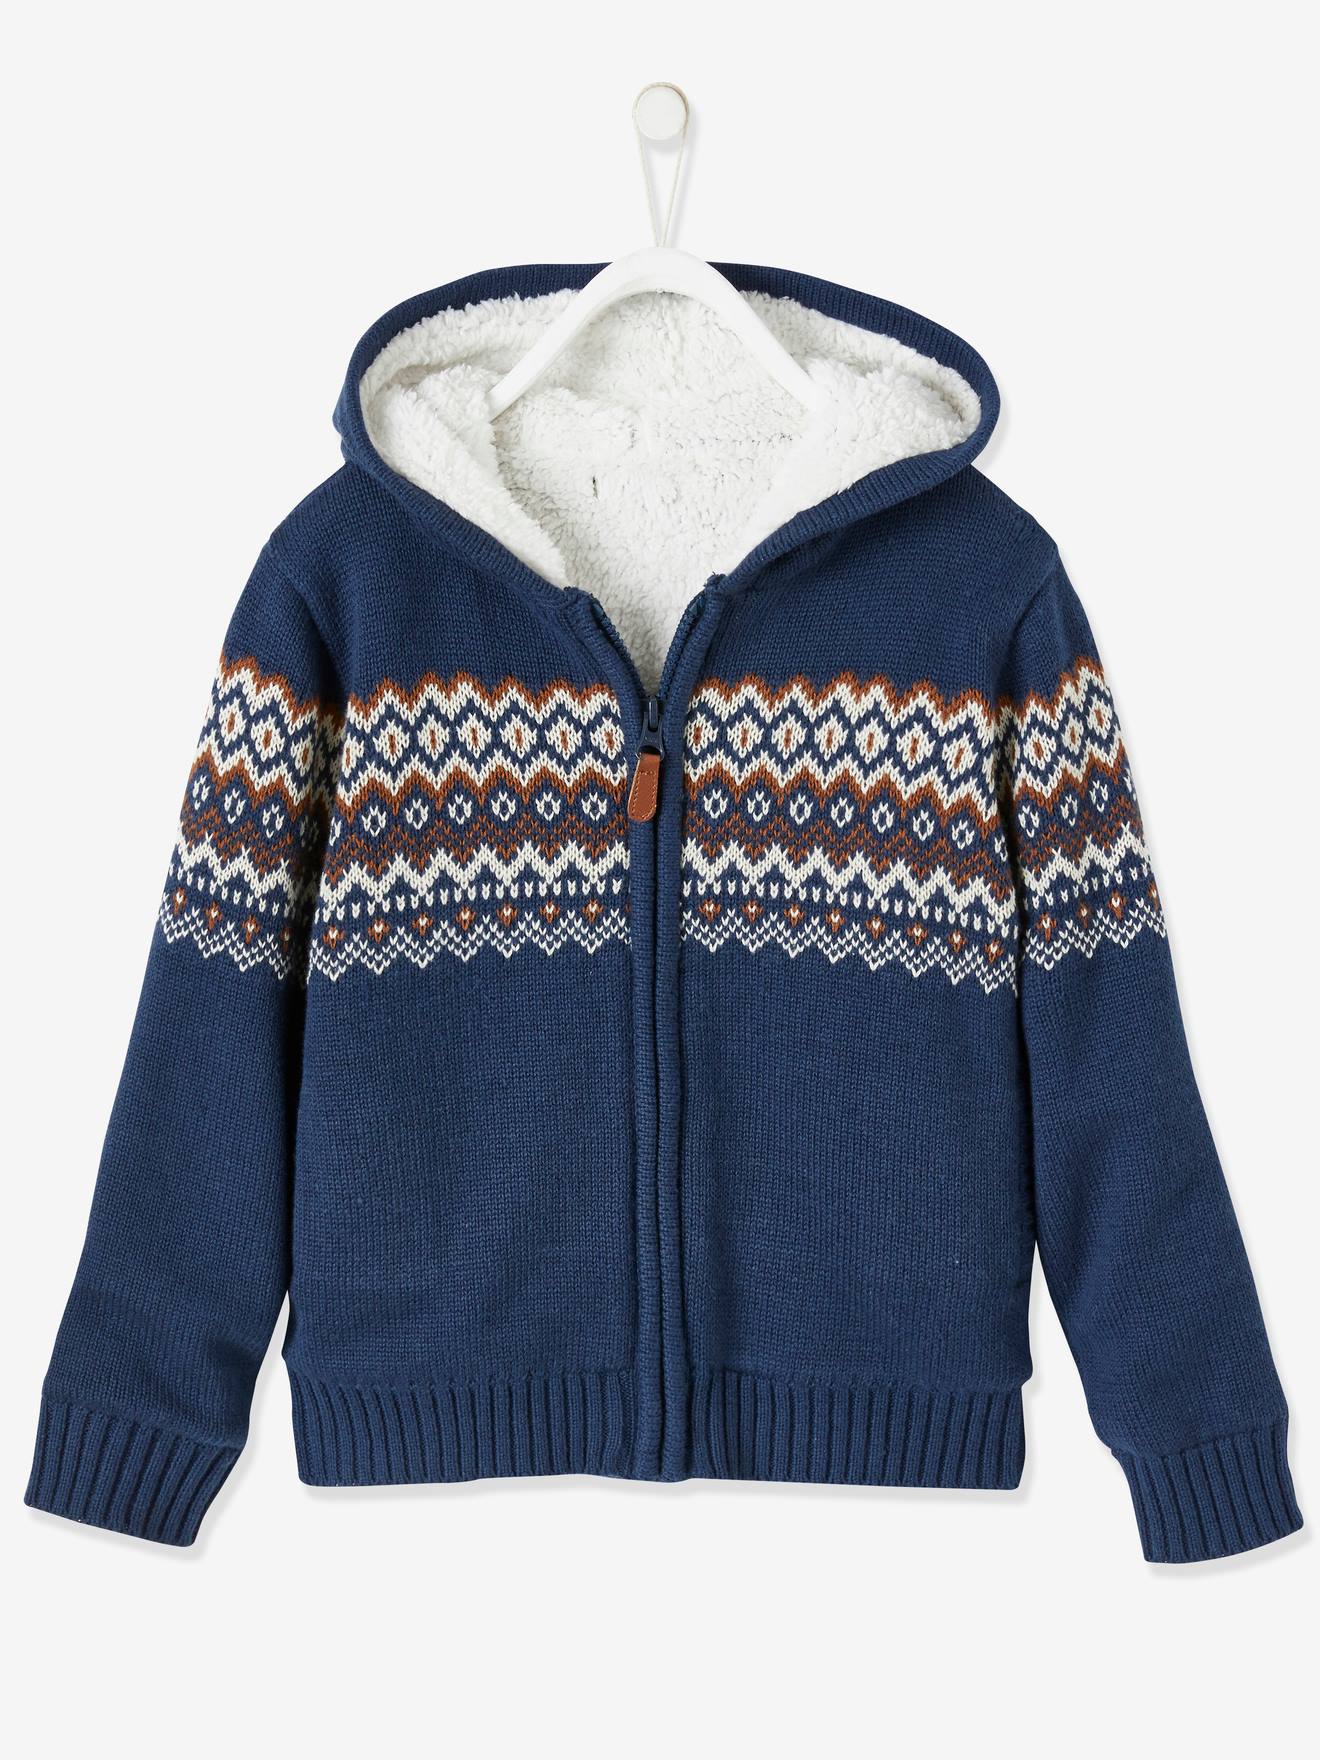 KIDS FASHION Jumpers & Sweatshirts Elegant Blue/White/Navy Blue 5Y discount 83% Vertbaudet sweatshirt 